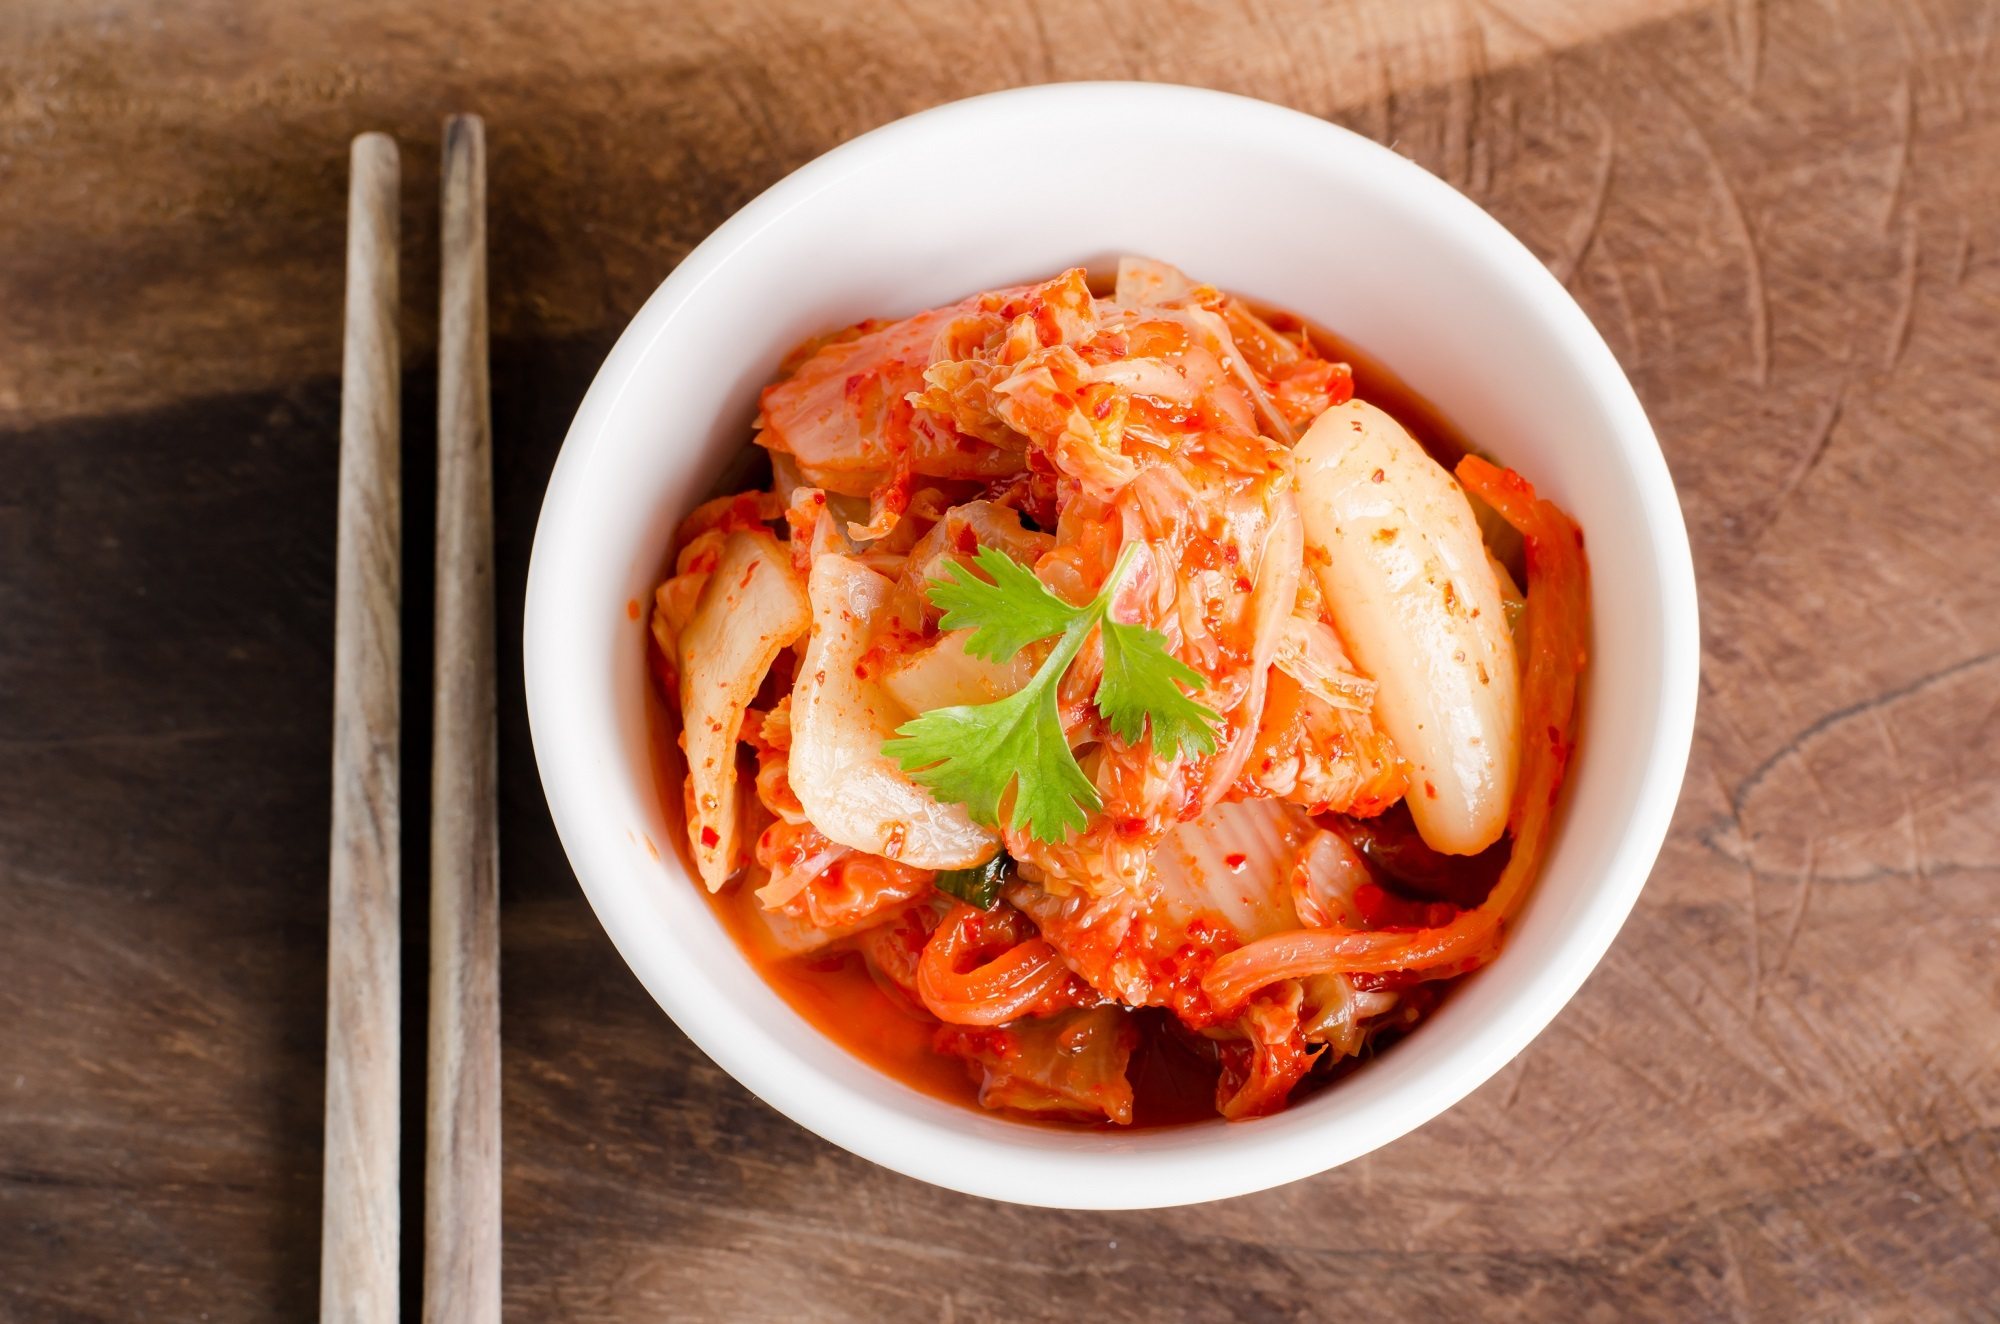 jual makanan atau jajanan korea yang hits / bisnis korean streed food